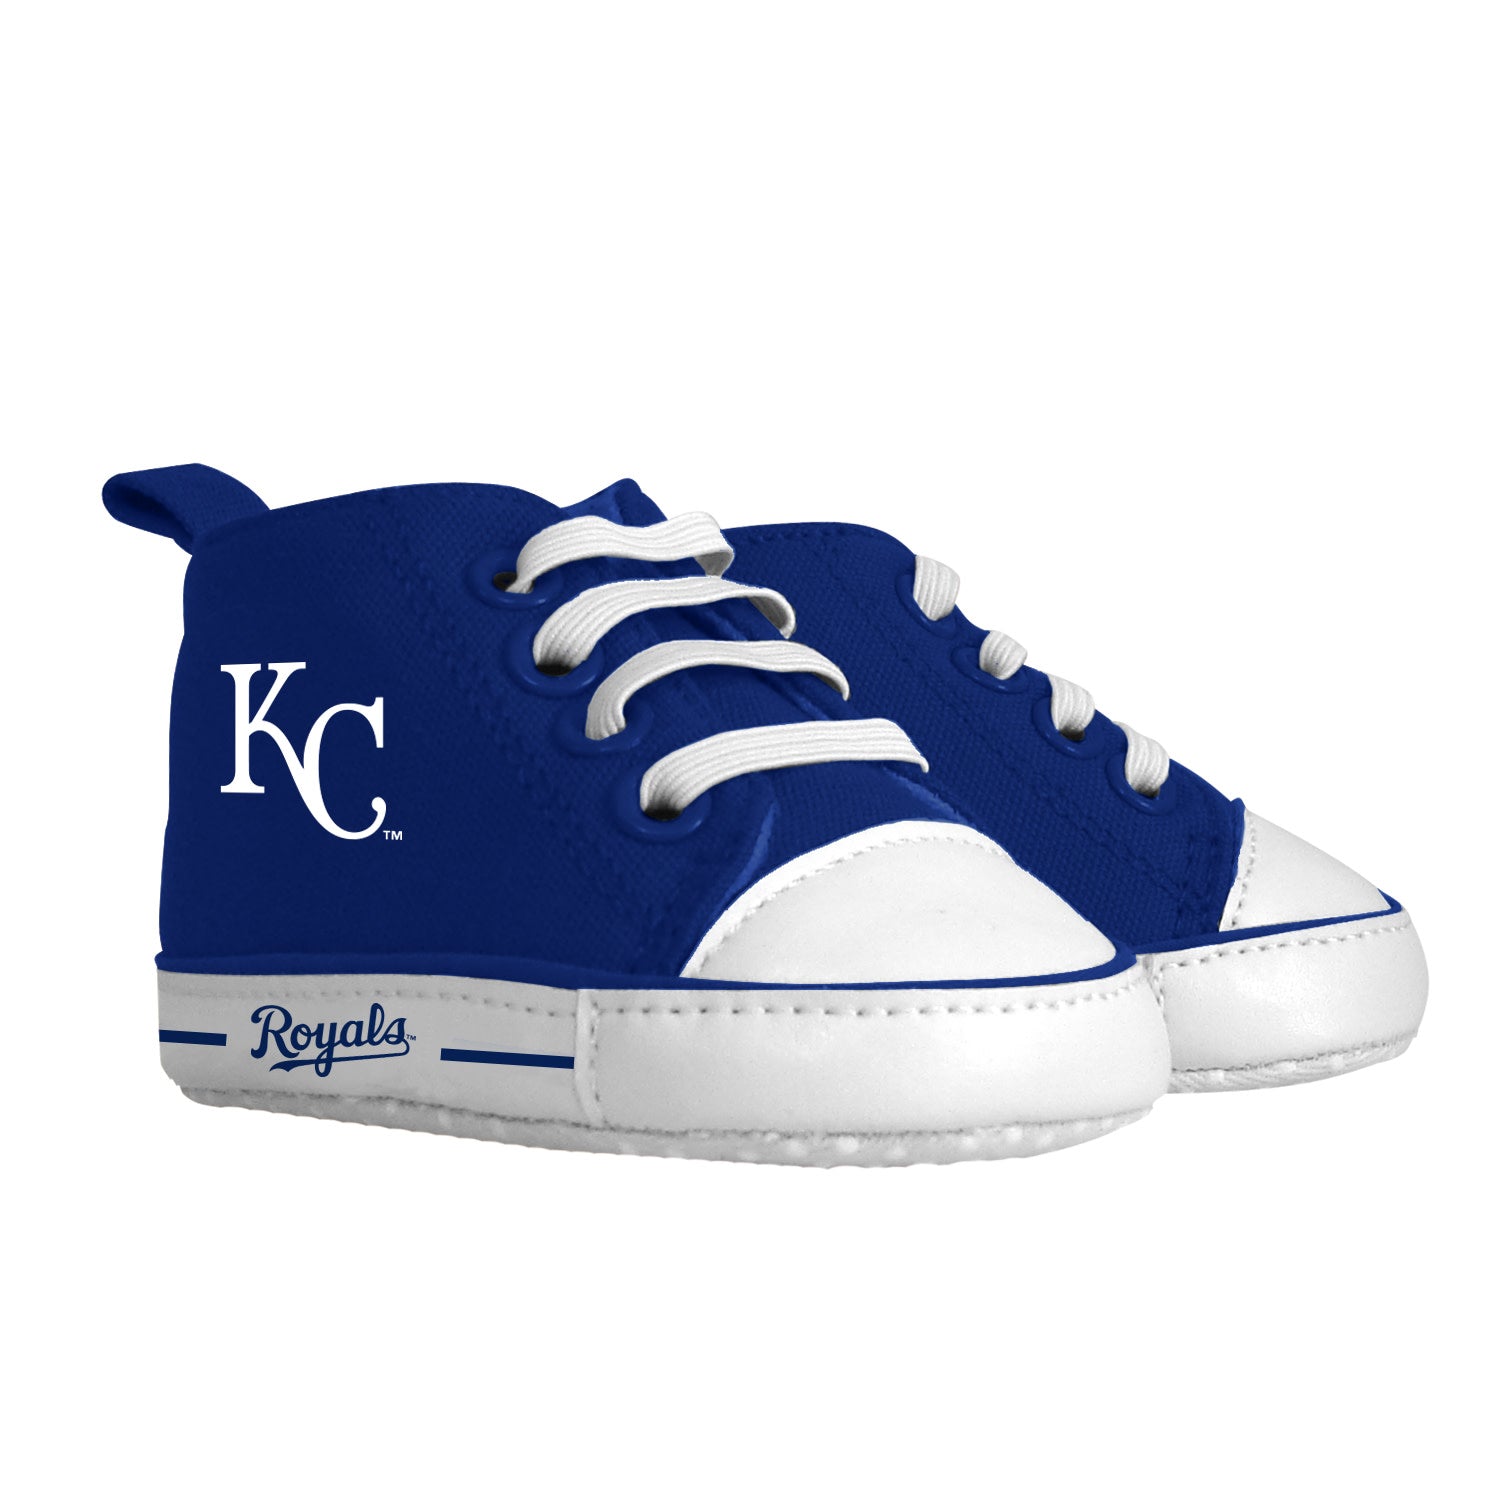 Kansas City Royals Baby Shoes